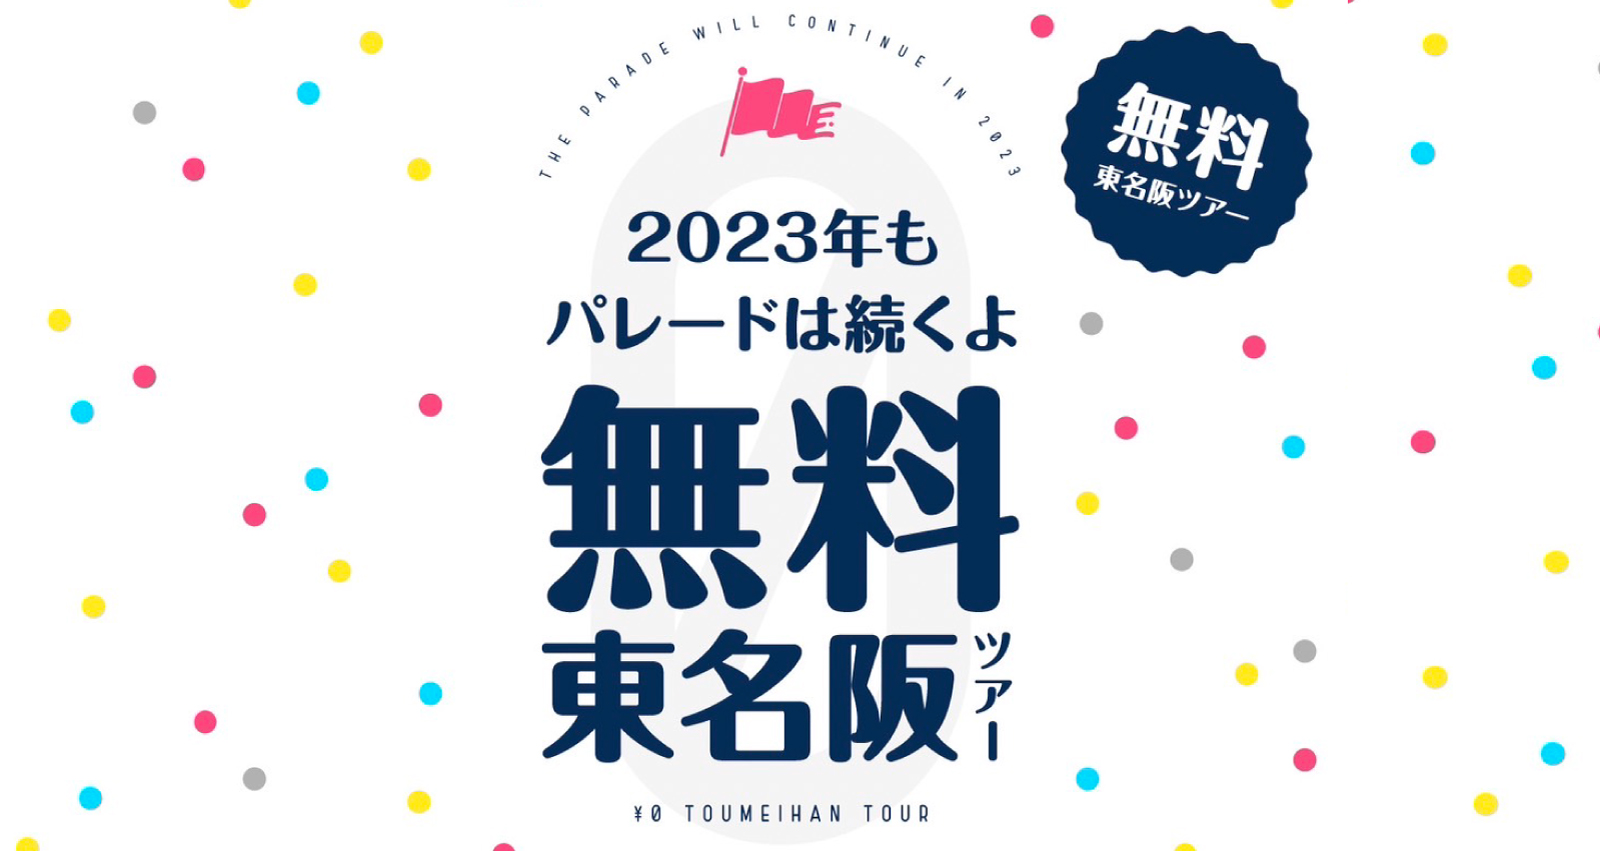 2023 年もパレードは続くよ 無料東名阪ツアー!